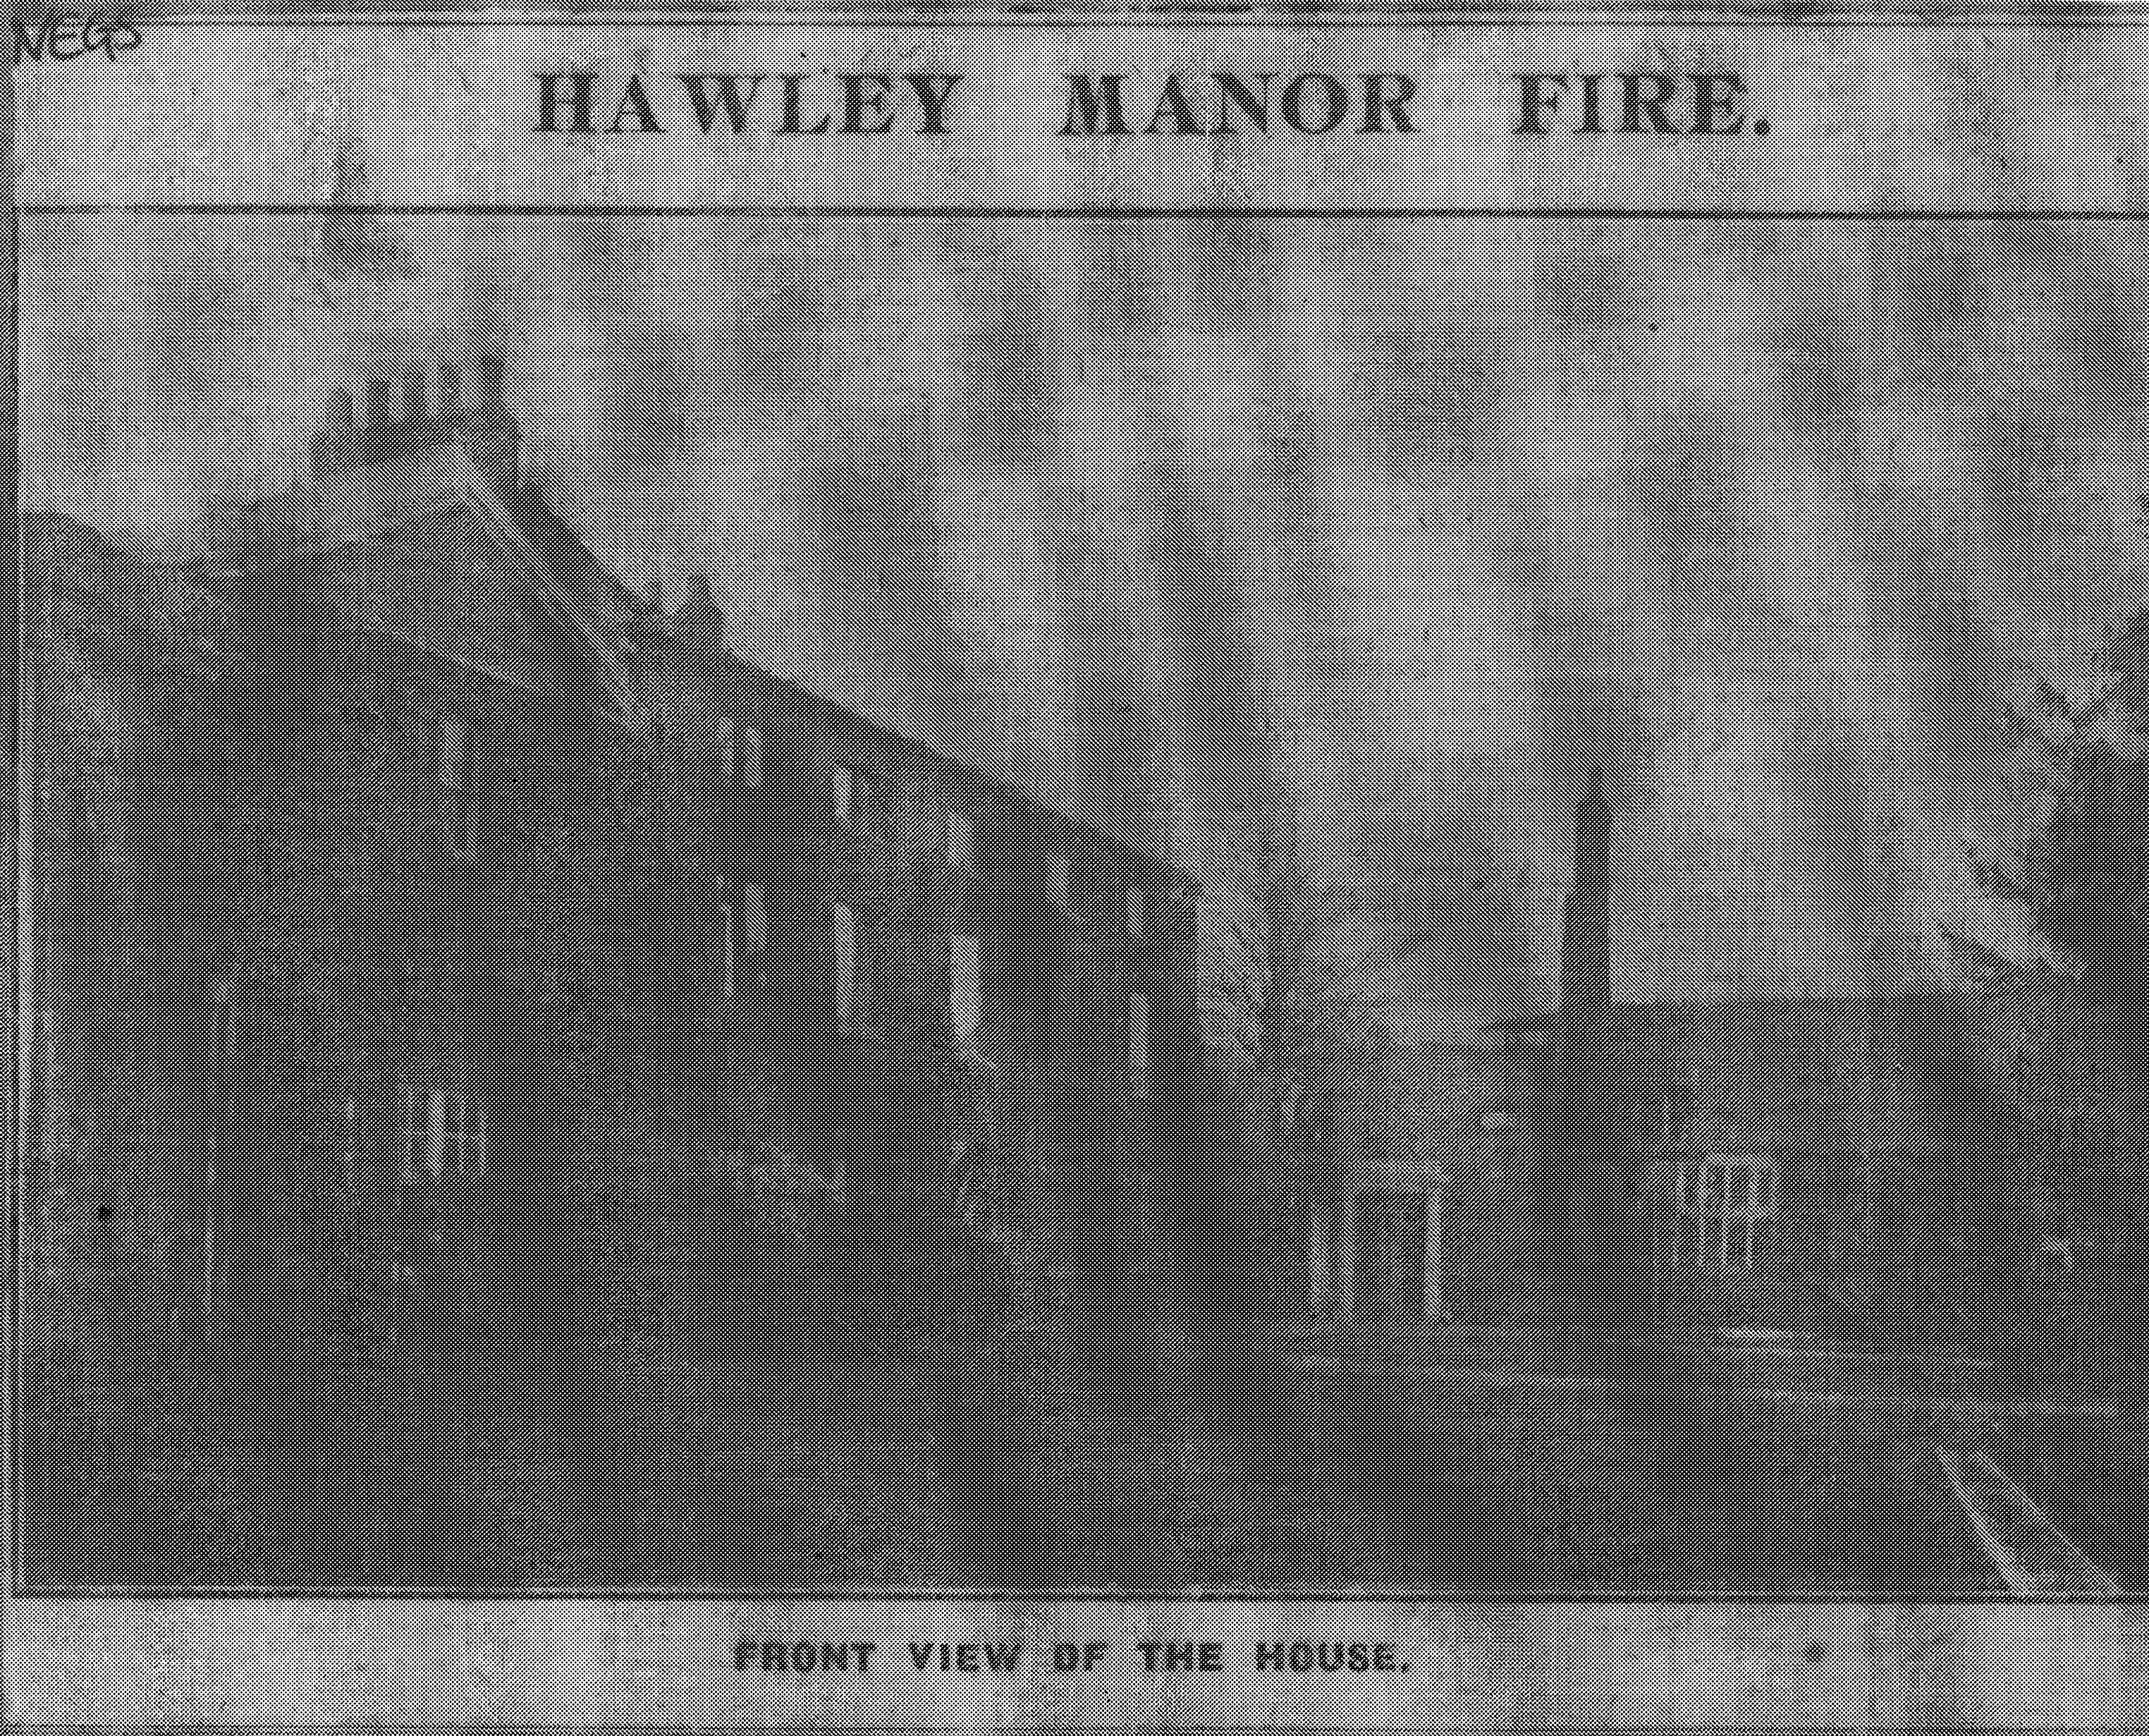 Hawley Manor